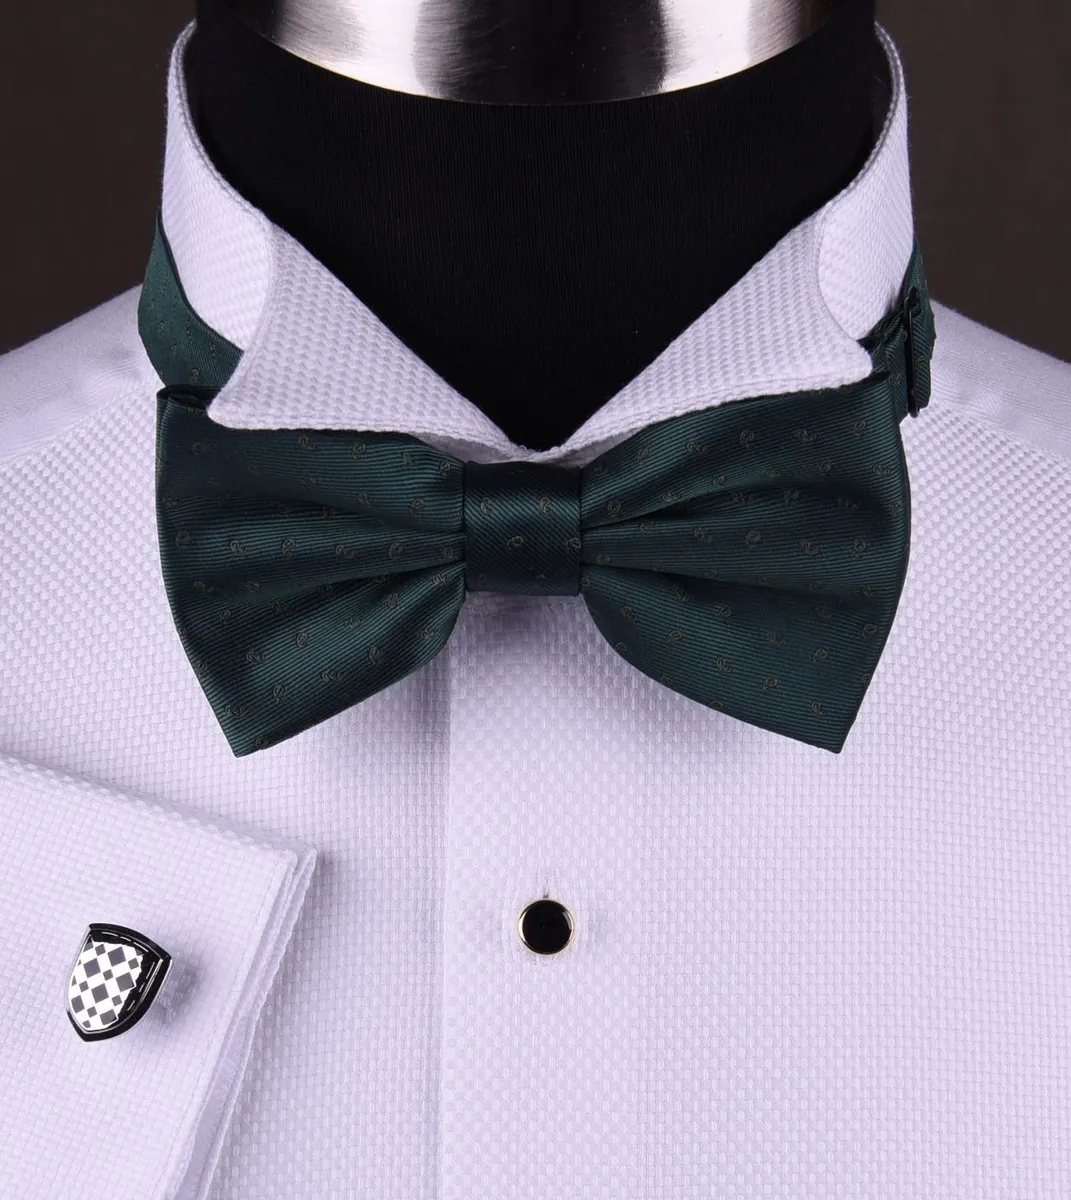 White Luxury Tuxedo Formal Shirt Party Free Bow Tie | eBay